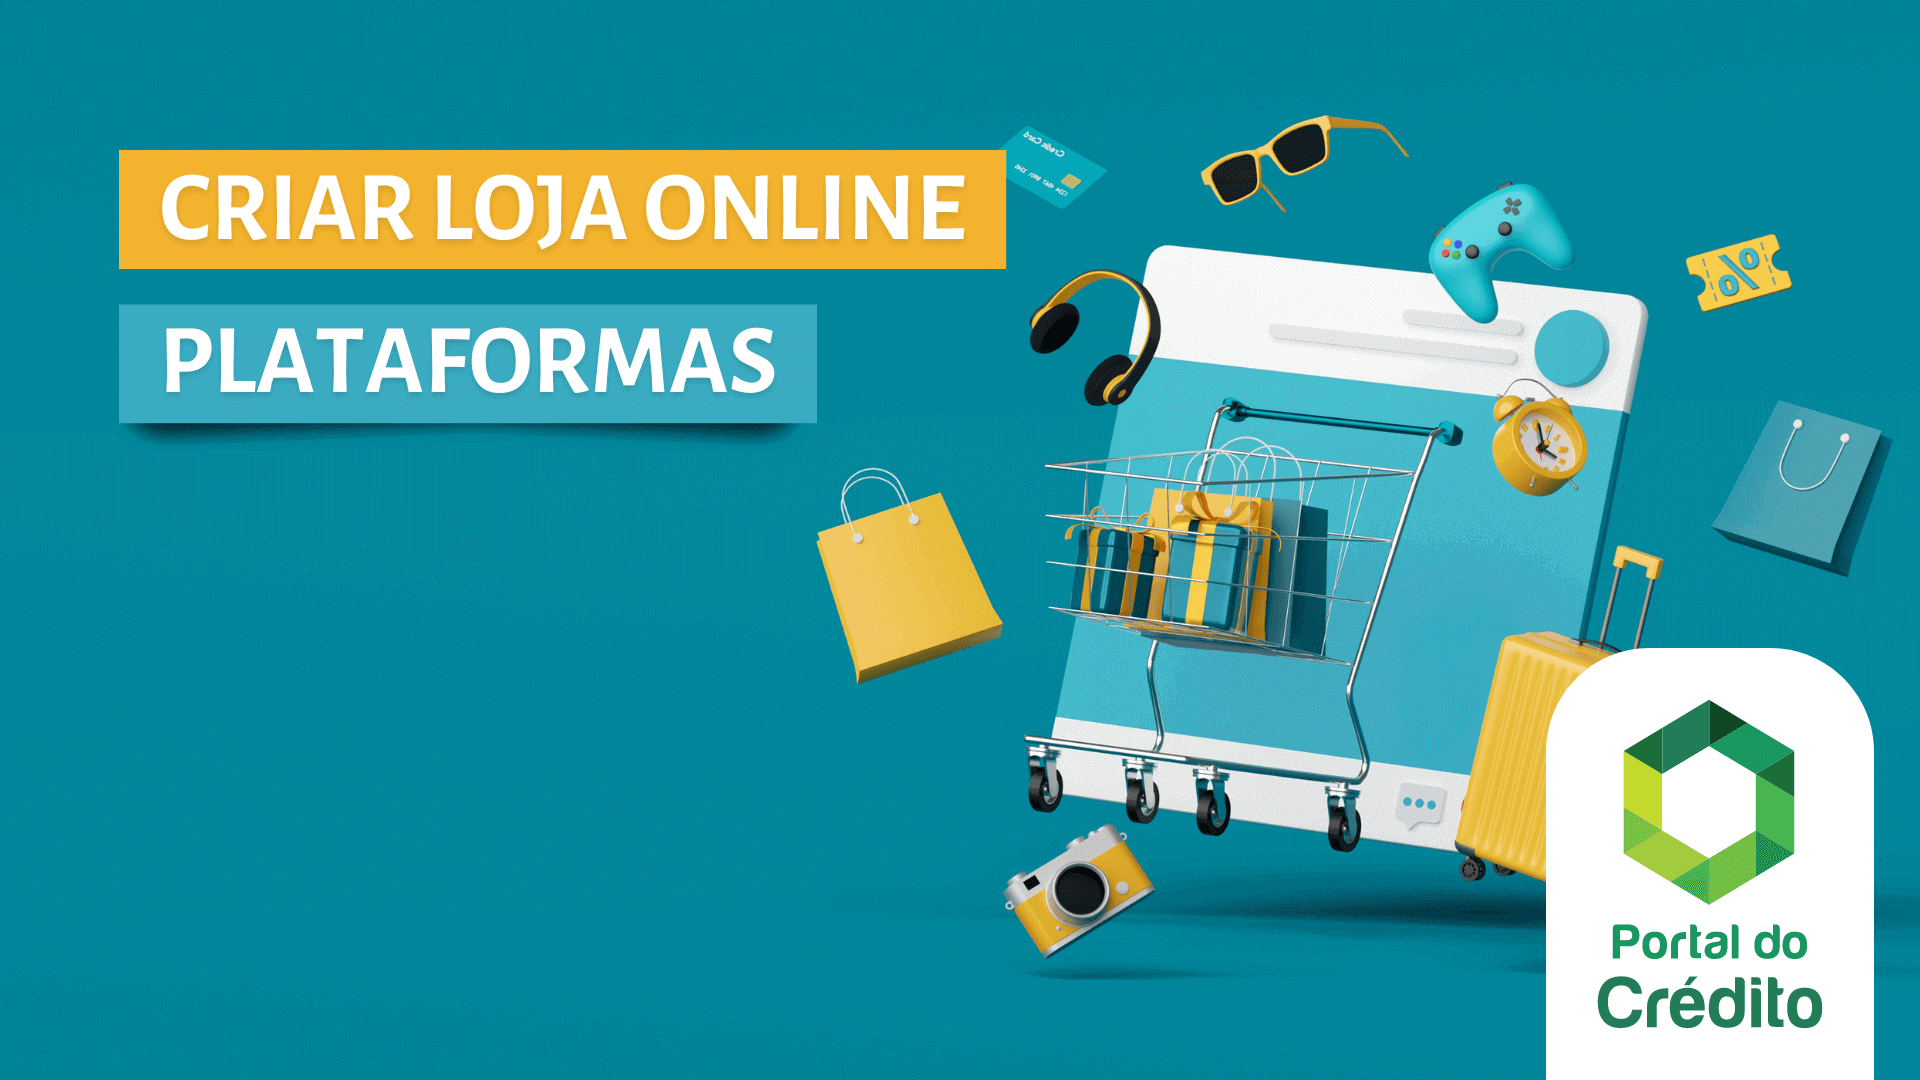 Criar Loja Online em Portugal: Melhores Plataformas